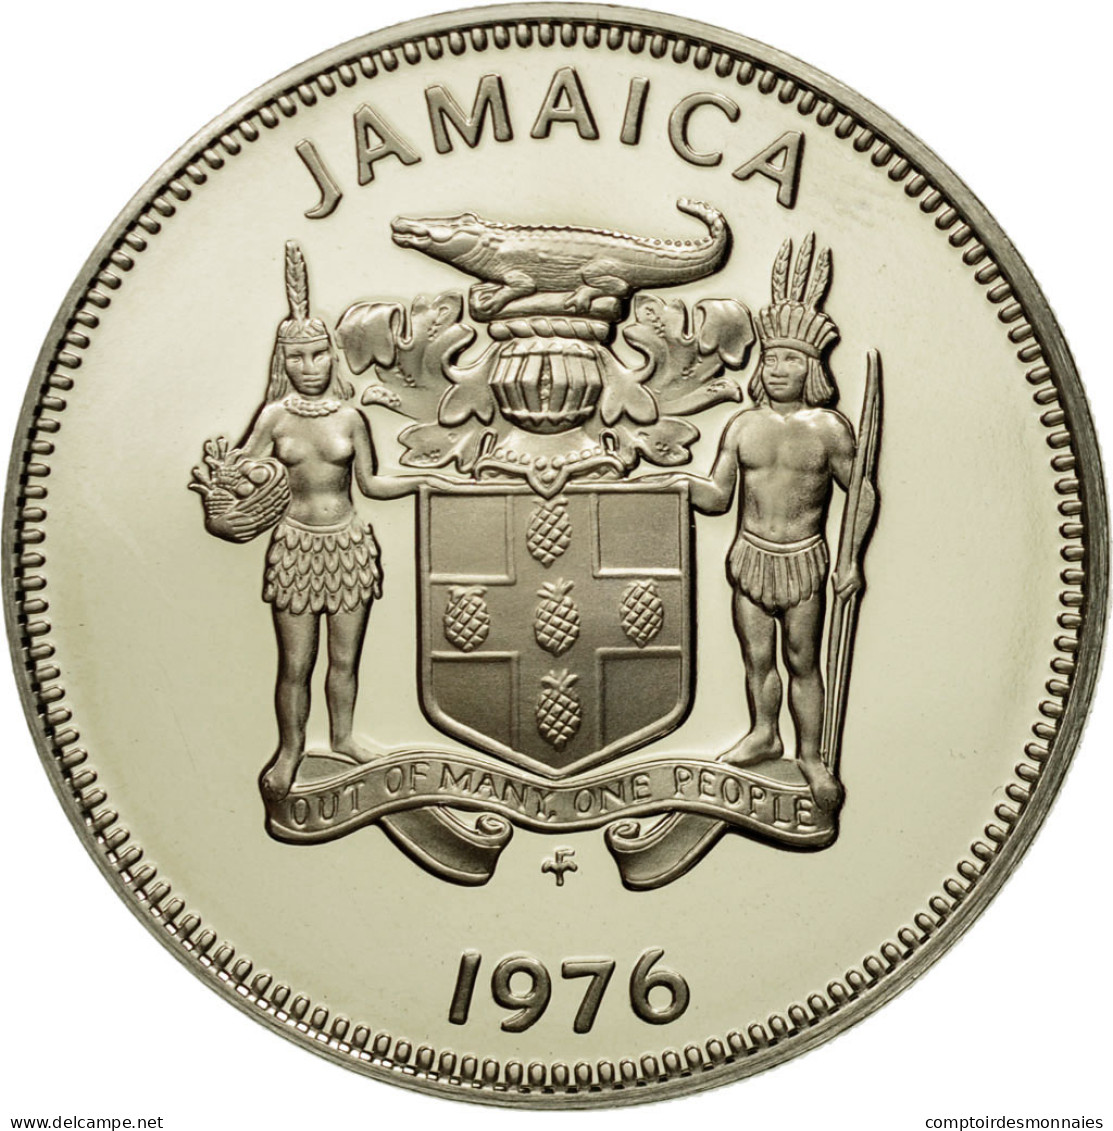 Monnaie, Jamaica, Elizabeth II, 20 Cents, 1976, Franklin Mint, USA, FDC - Jamaique